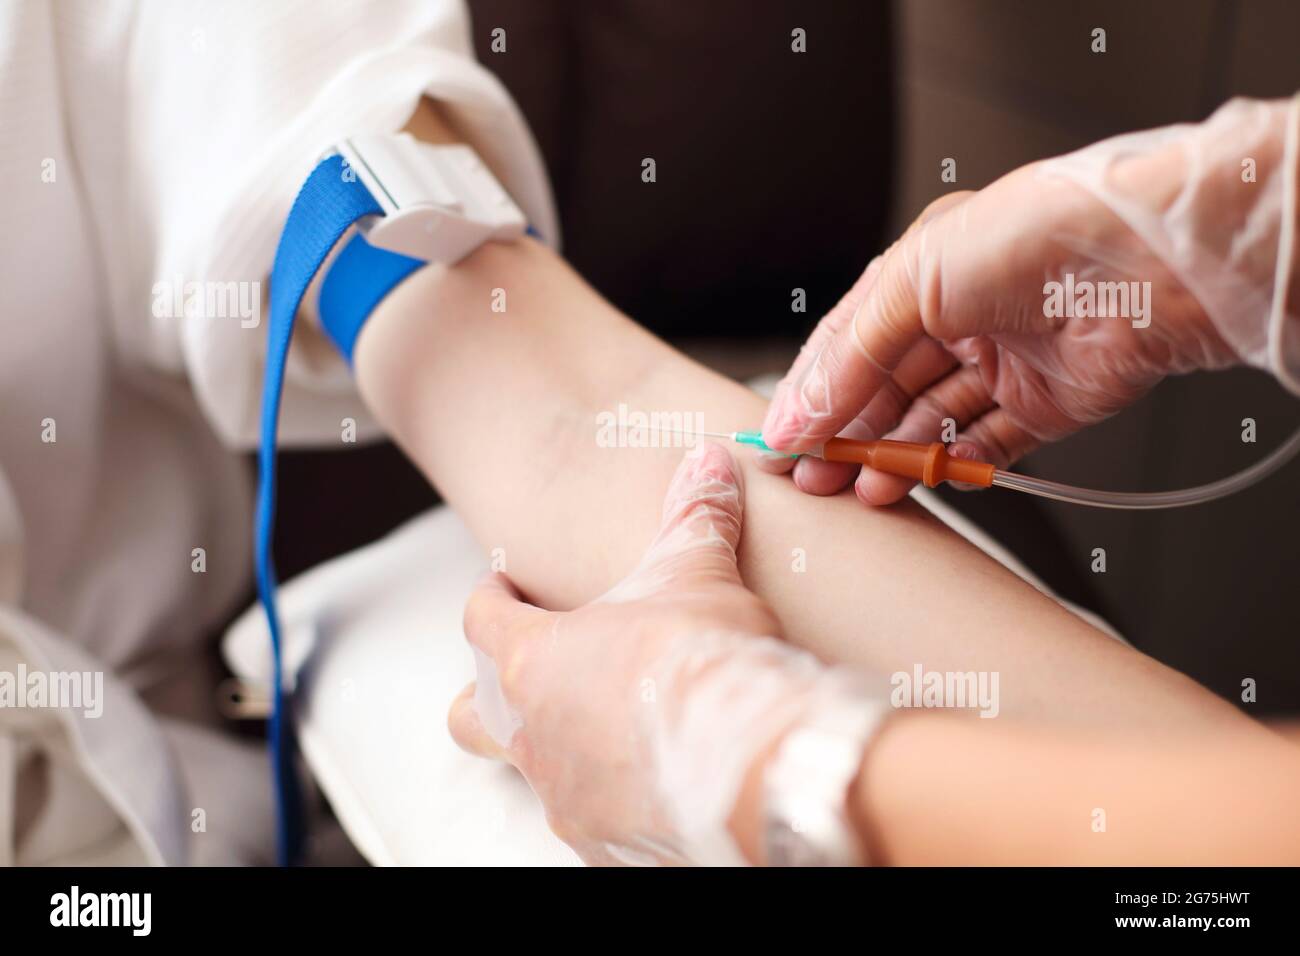 Femme médecin traitant le bras de la femme avec un tampon d'alcool avant de prélever un échantillon de sang à l'hôpital Banque D'Images